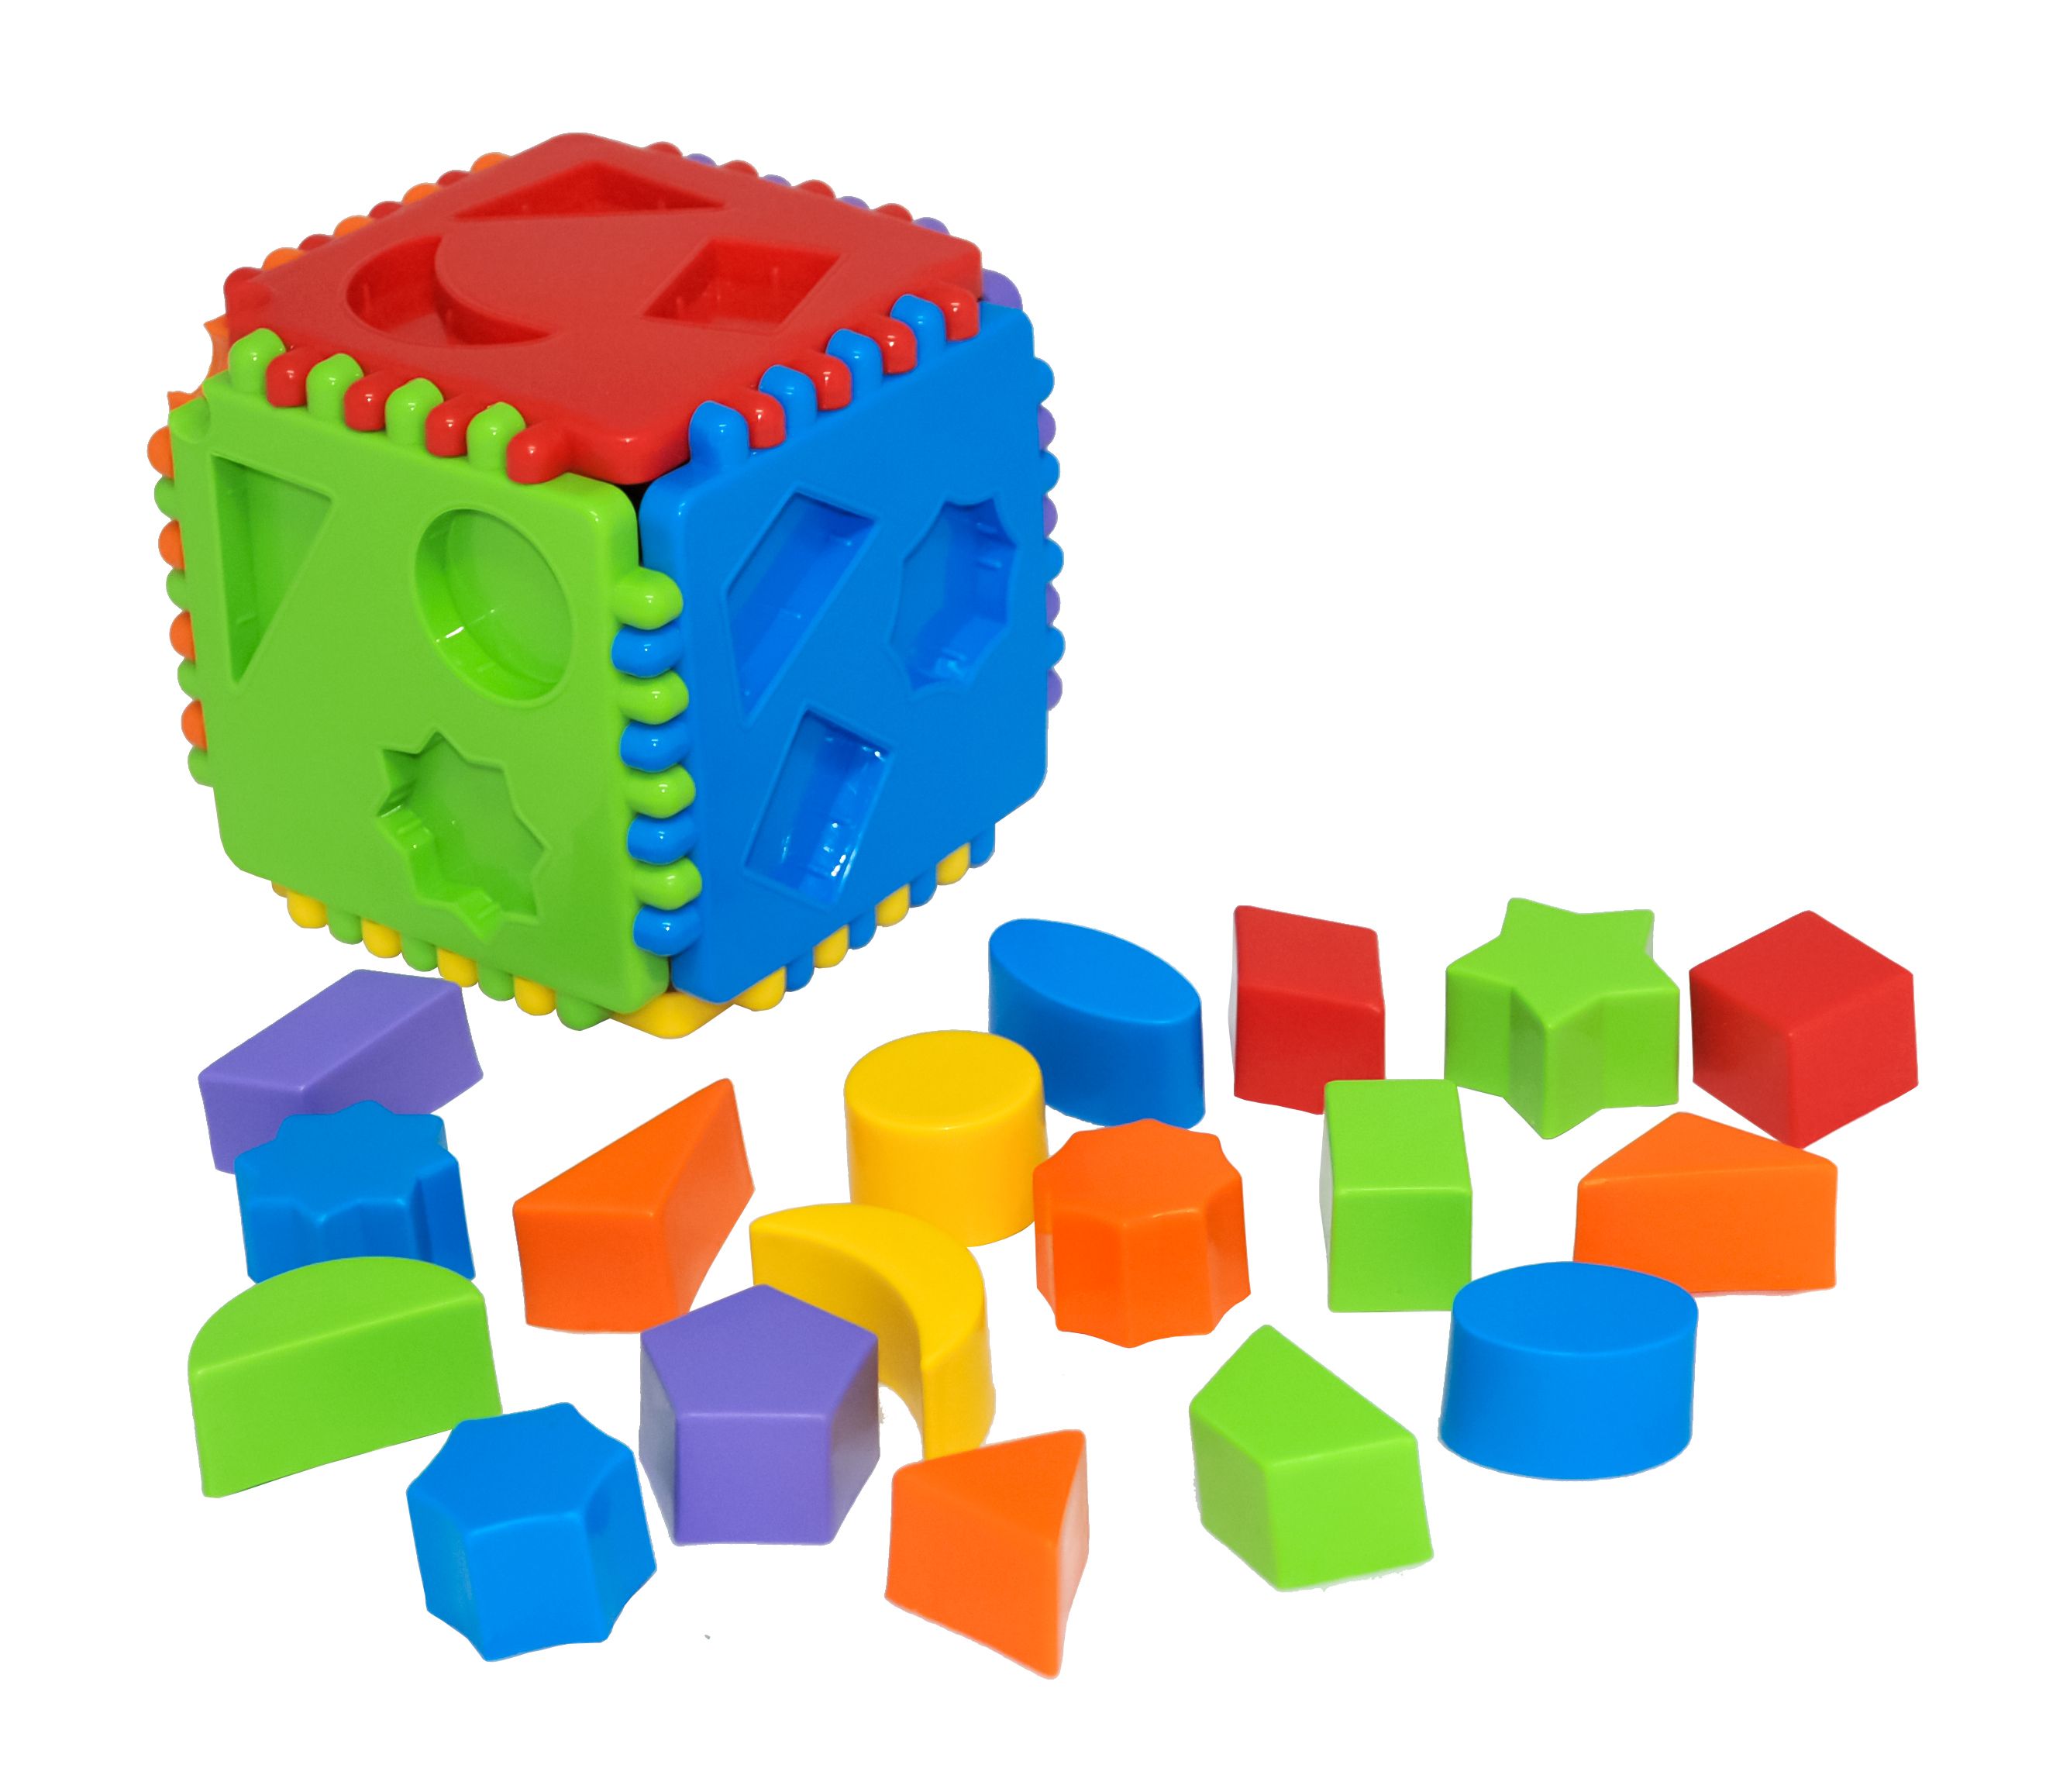 Іграшка сортер 'Educational cube' 24 елемента